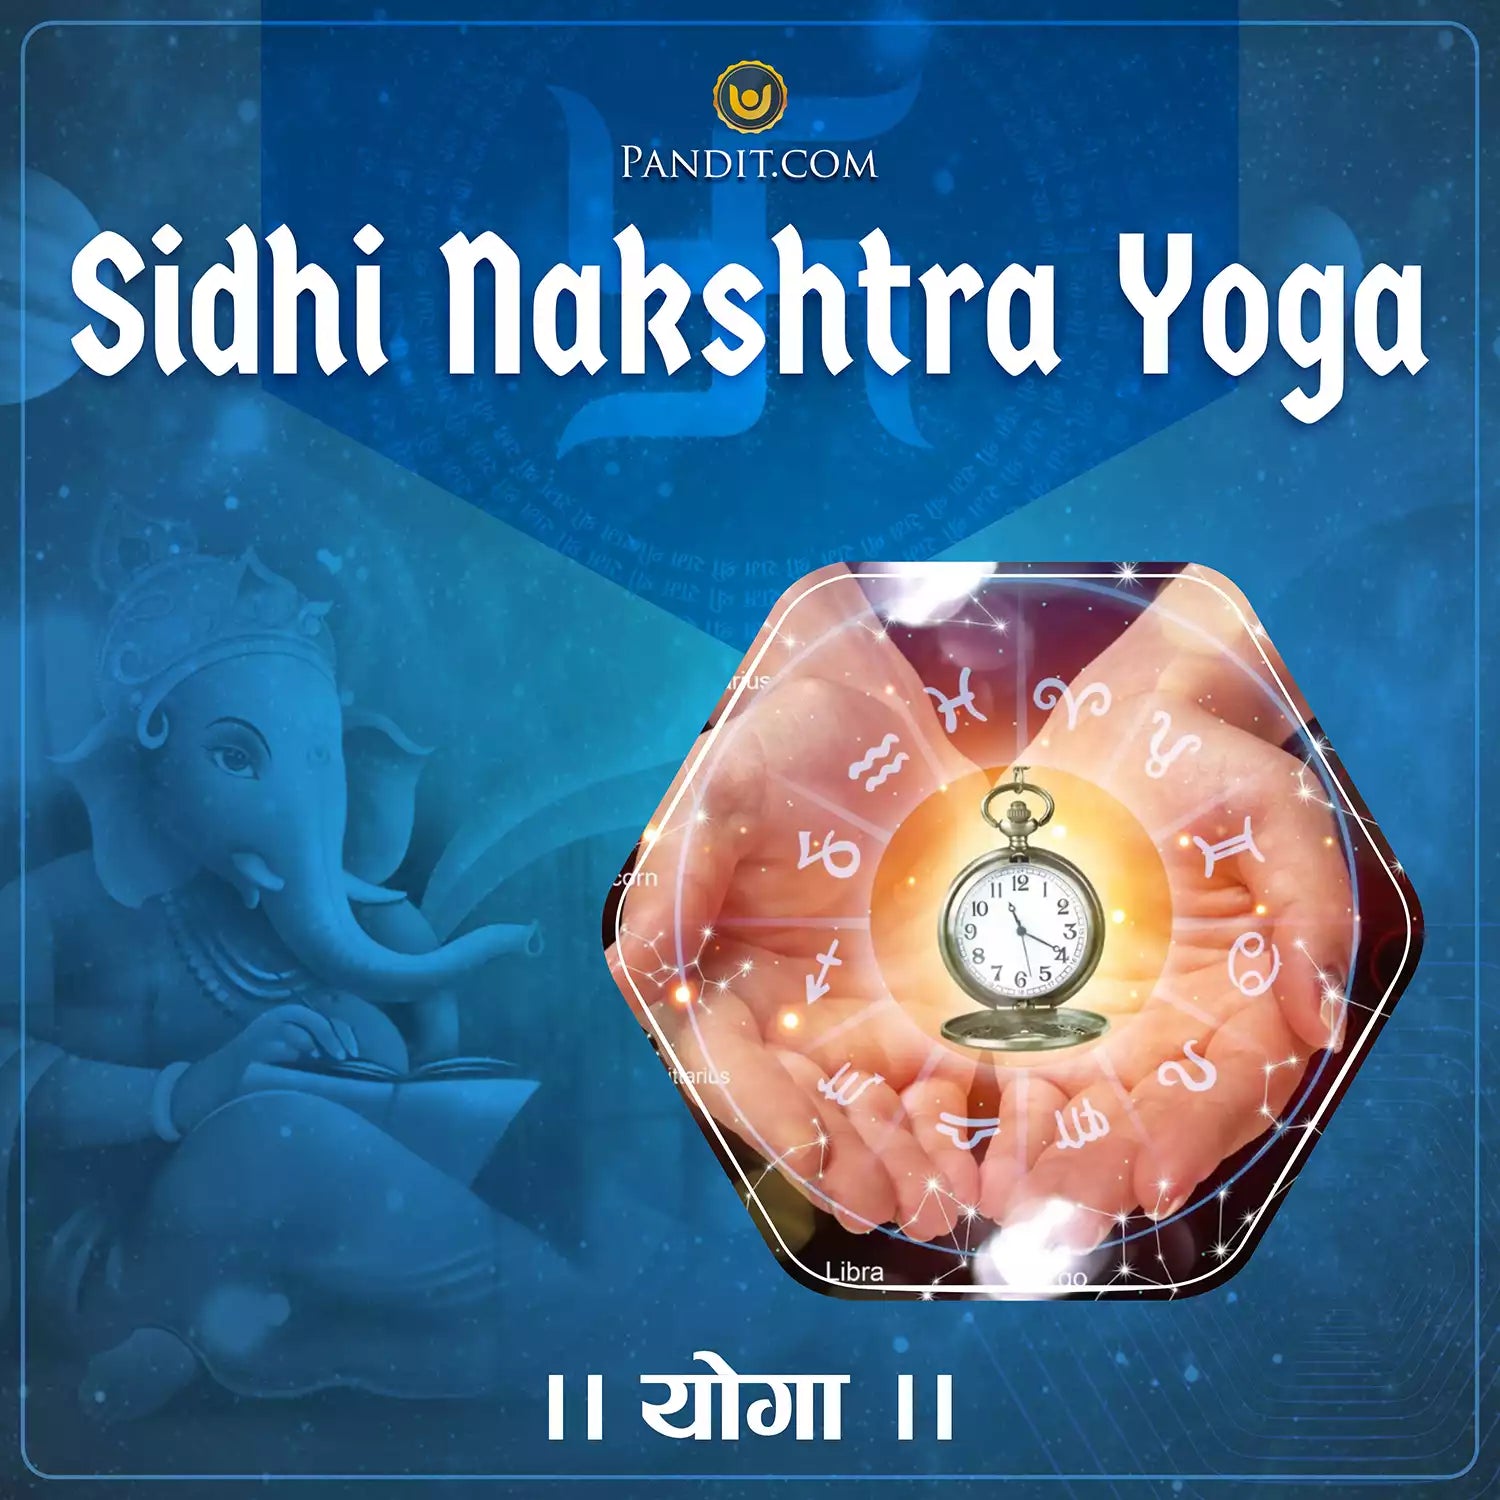 Sidhi Nakshtra Yoga